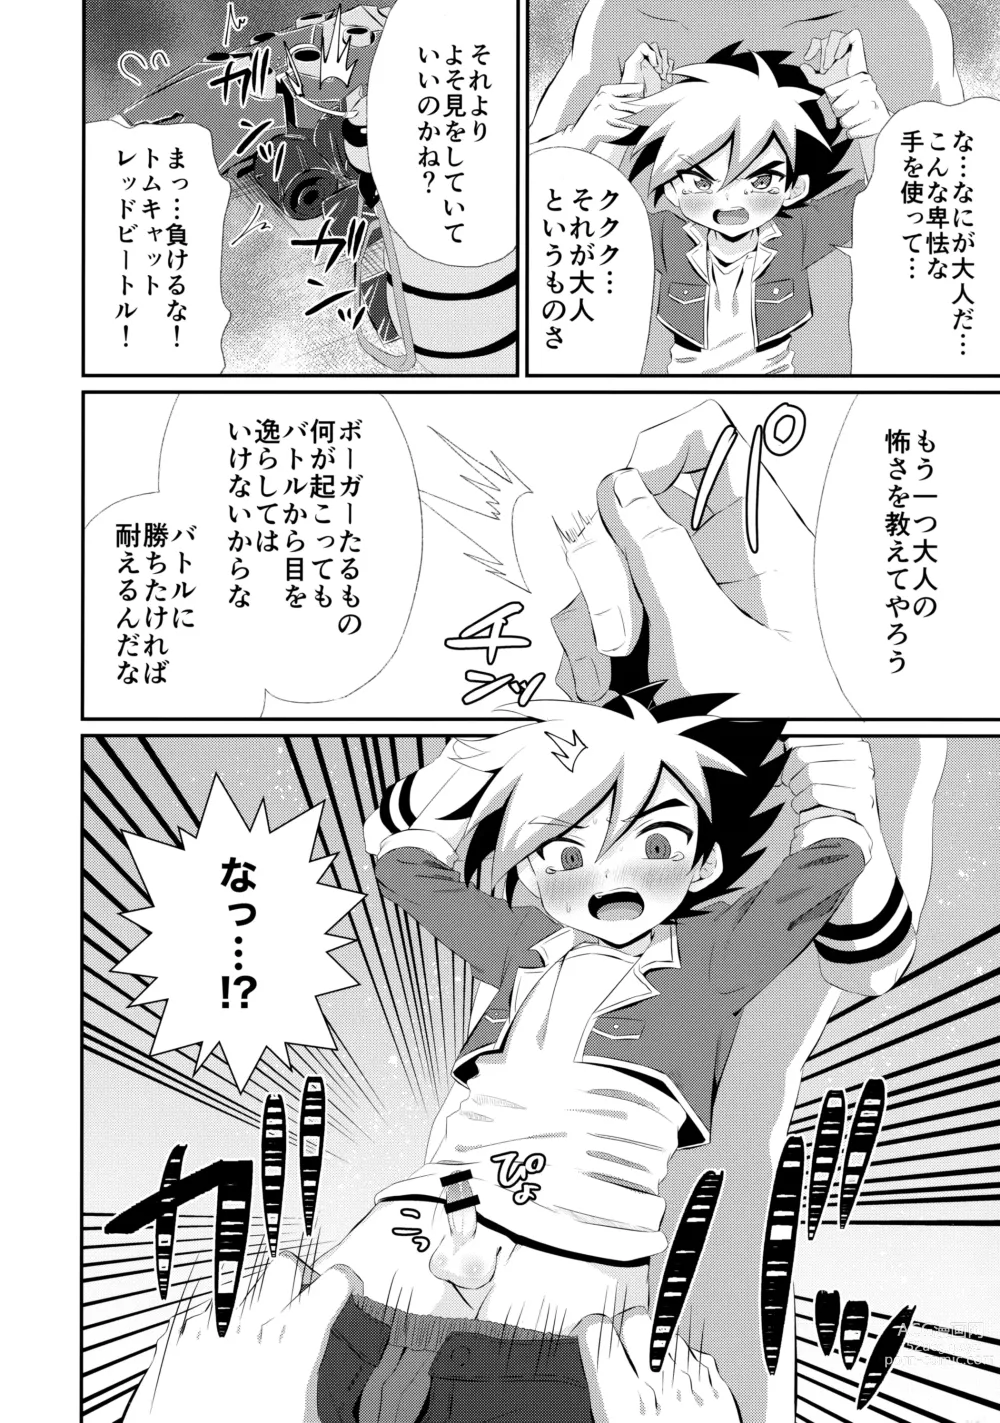 Page 11 of doujinshi Ryuuseisan ga Hikyouna Otona Bougubatora Nanka ni Makeru wake ga Nai!